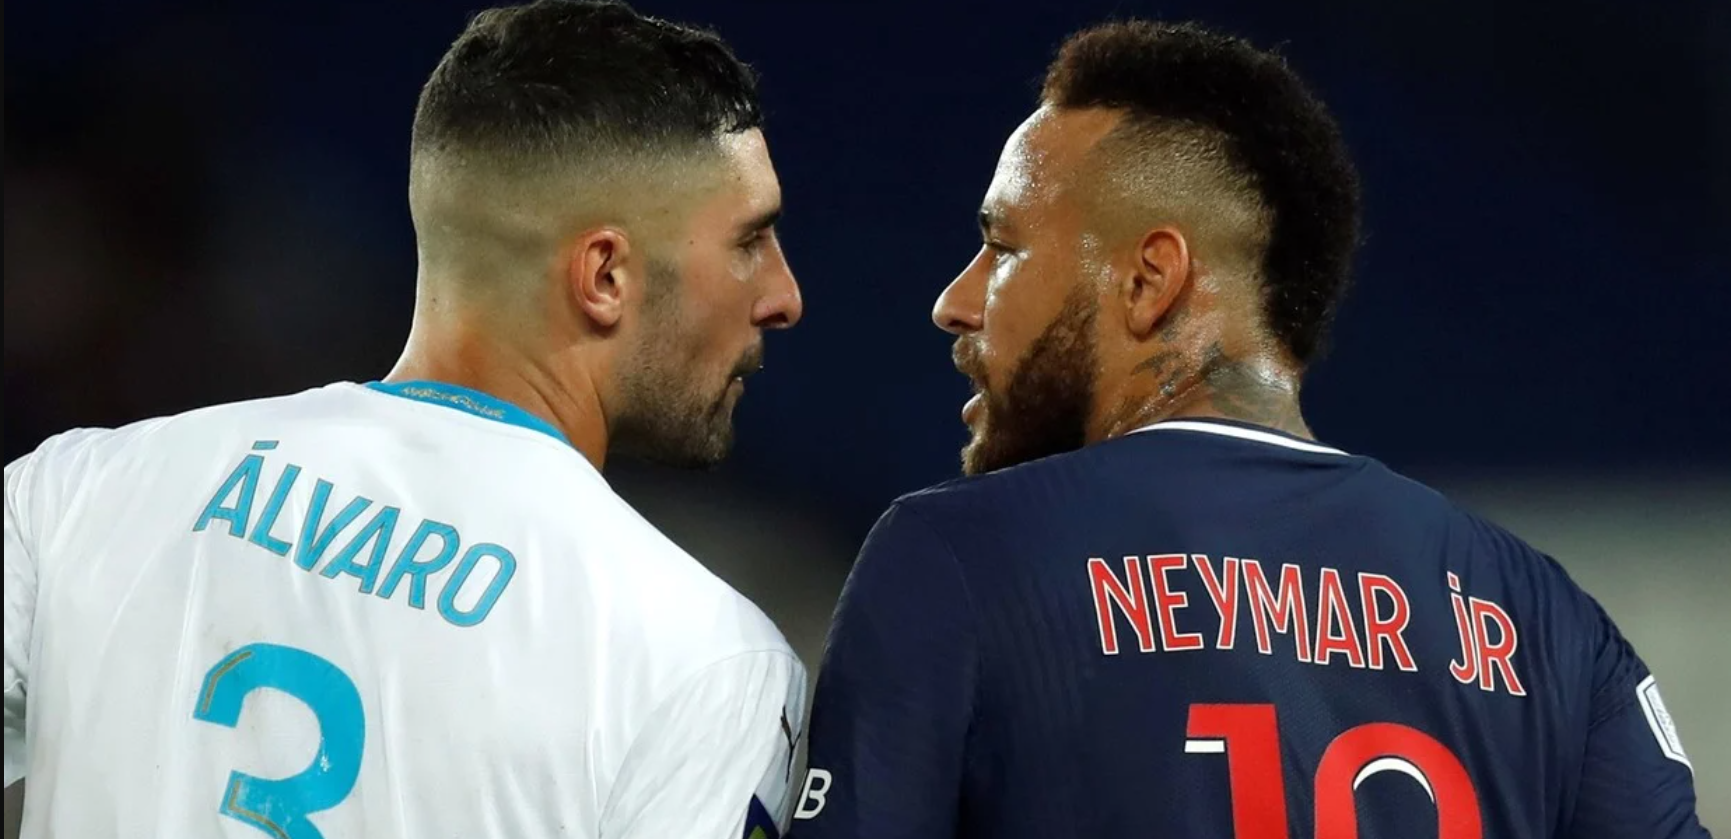 La Liga Francesa investigará los posibles insultos racistas de Álvaro González a Neymar